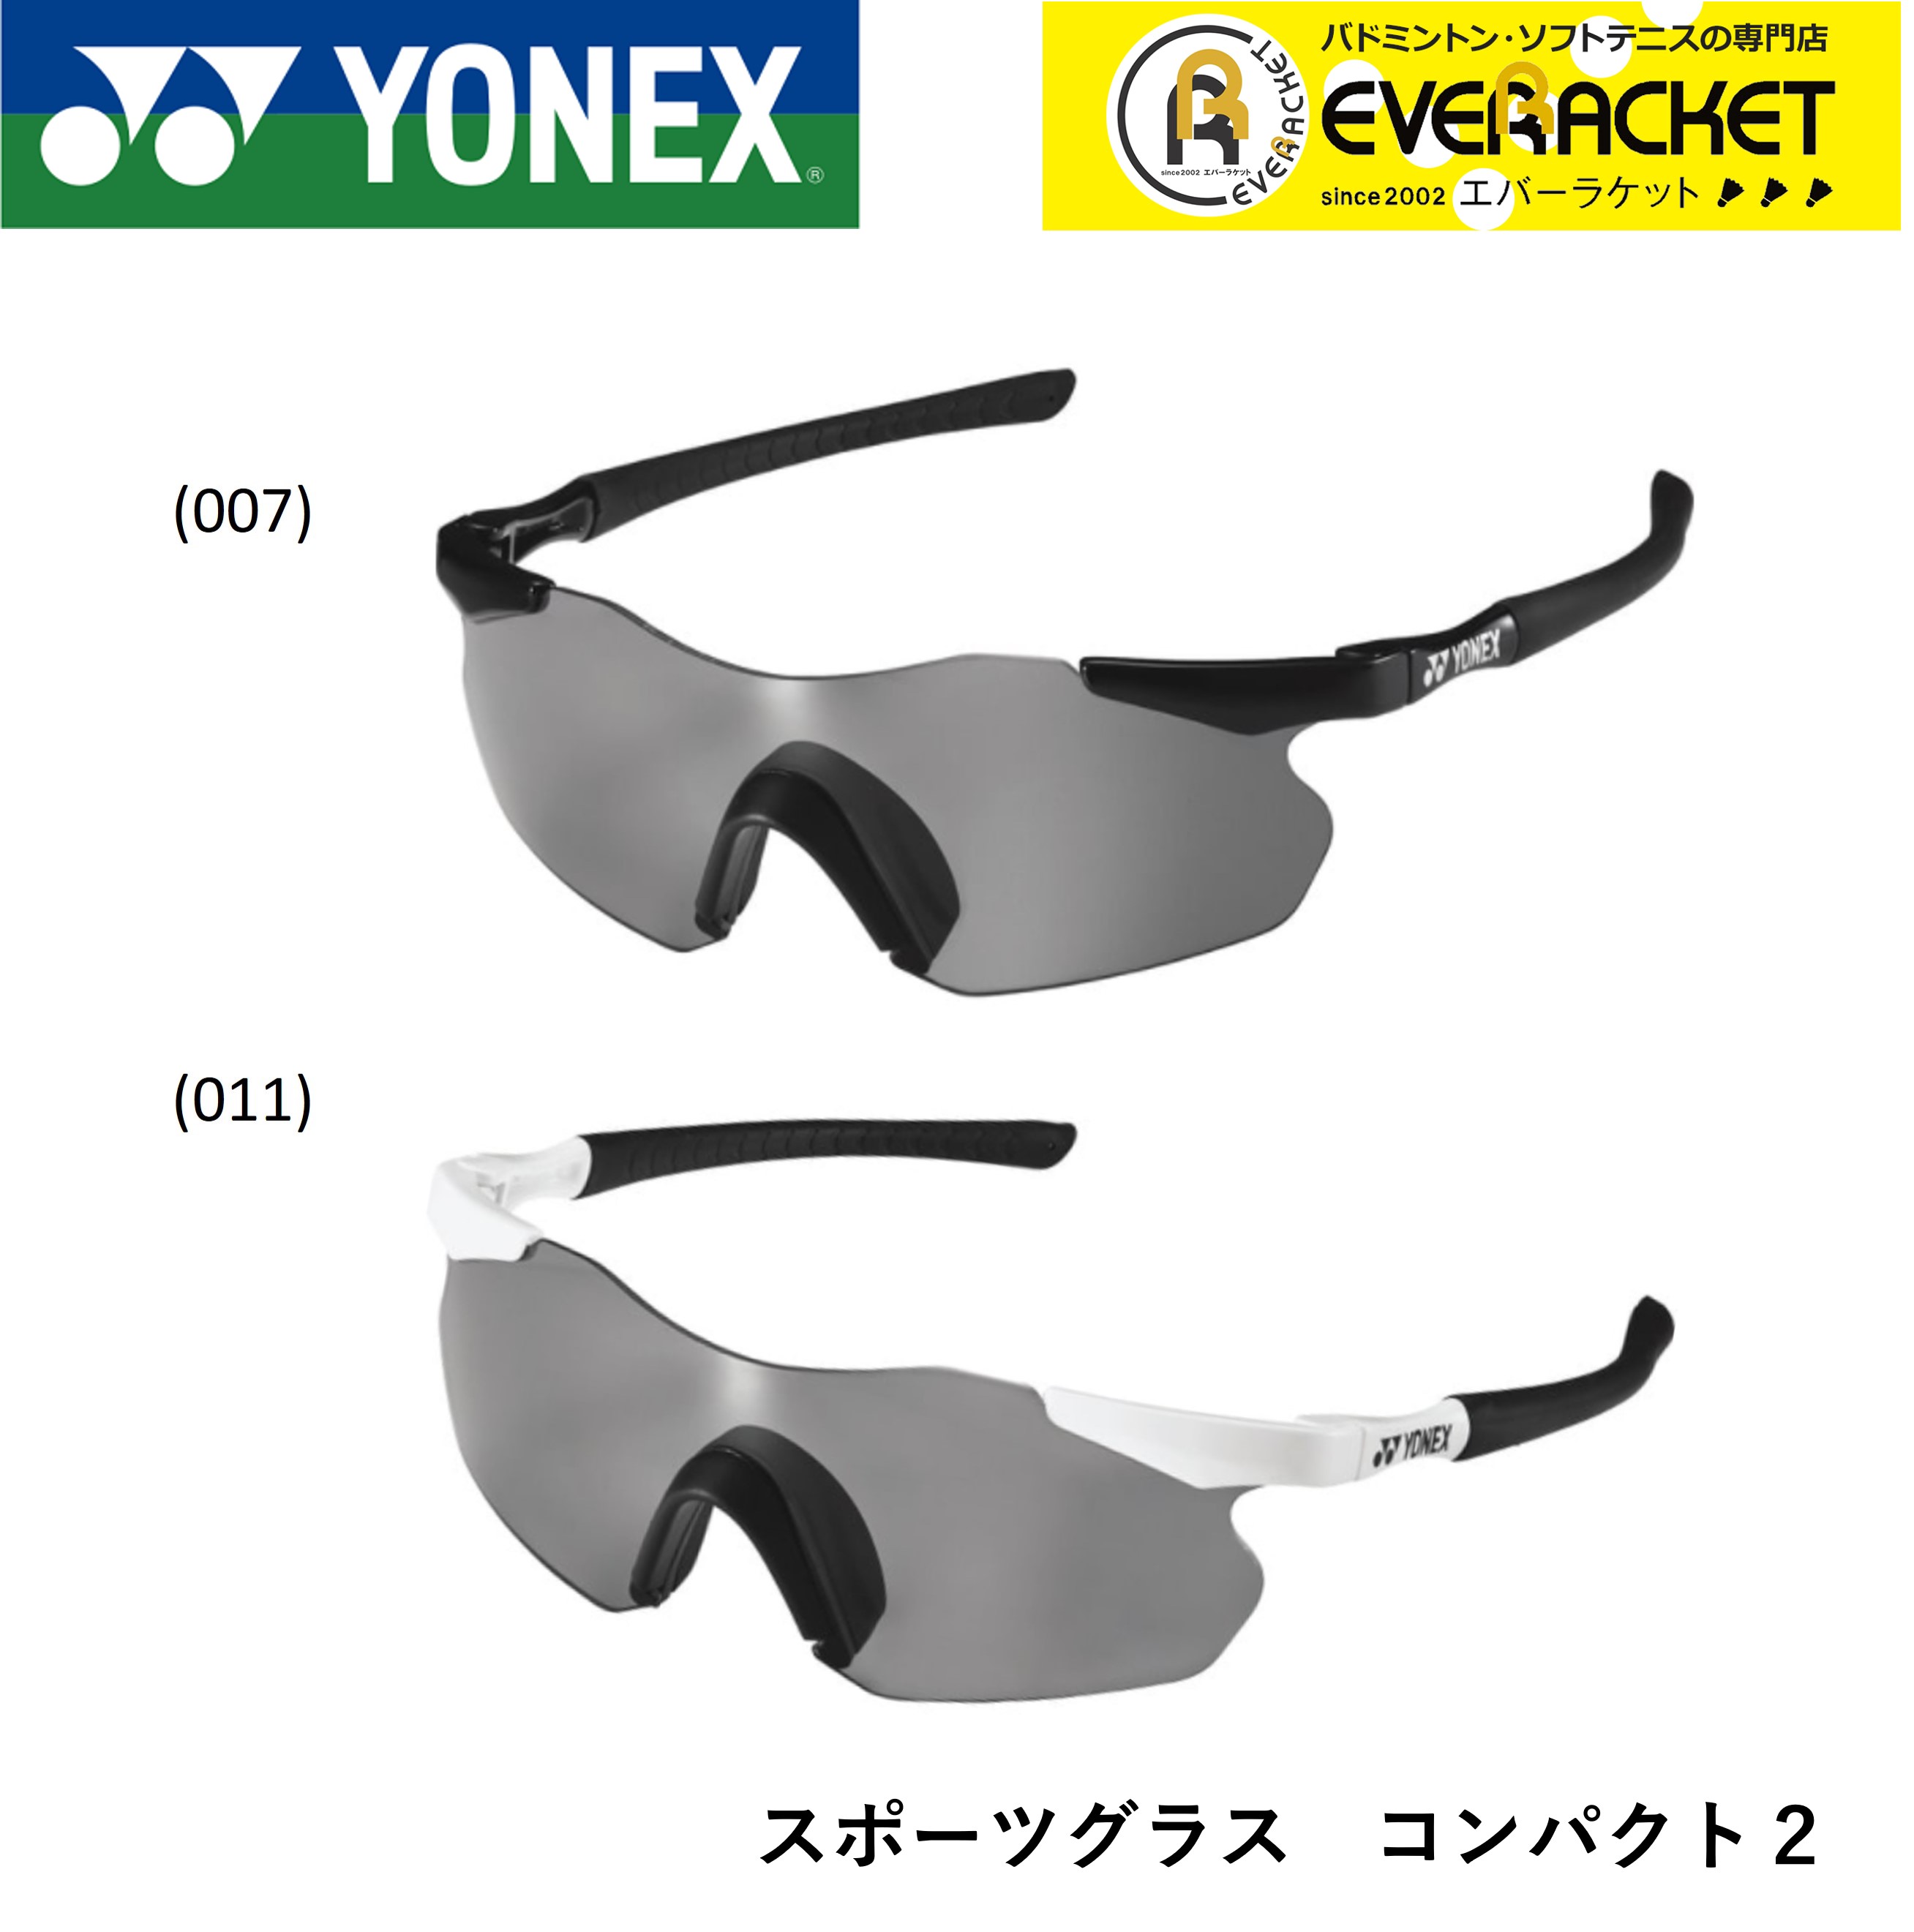 ヨネックス YONEX アクセサリー スポーツグラス コンパクト2 AC394C-2 バドミントン・テニス